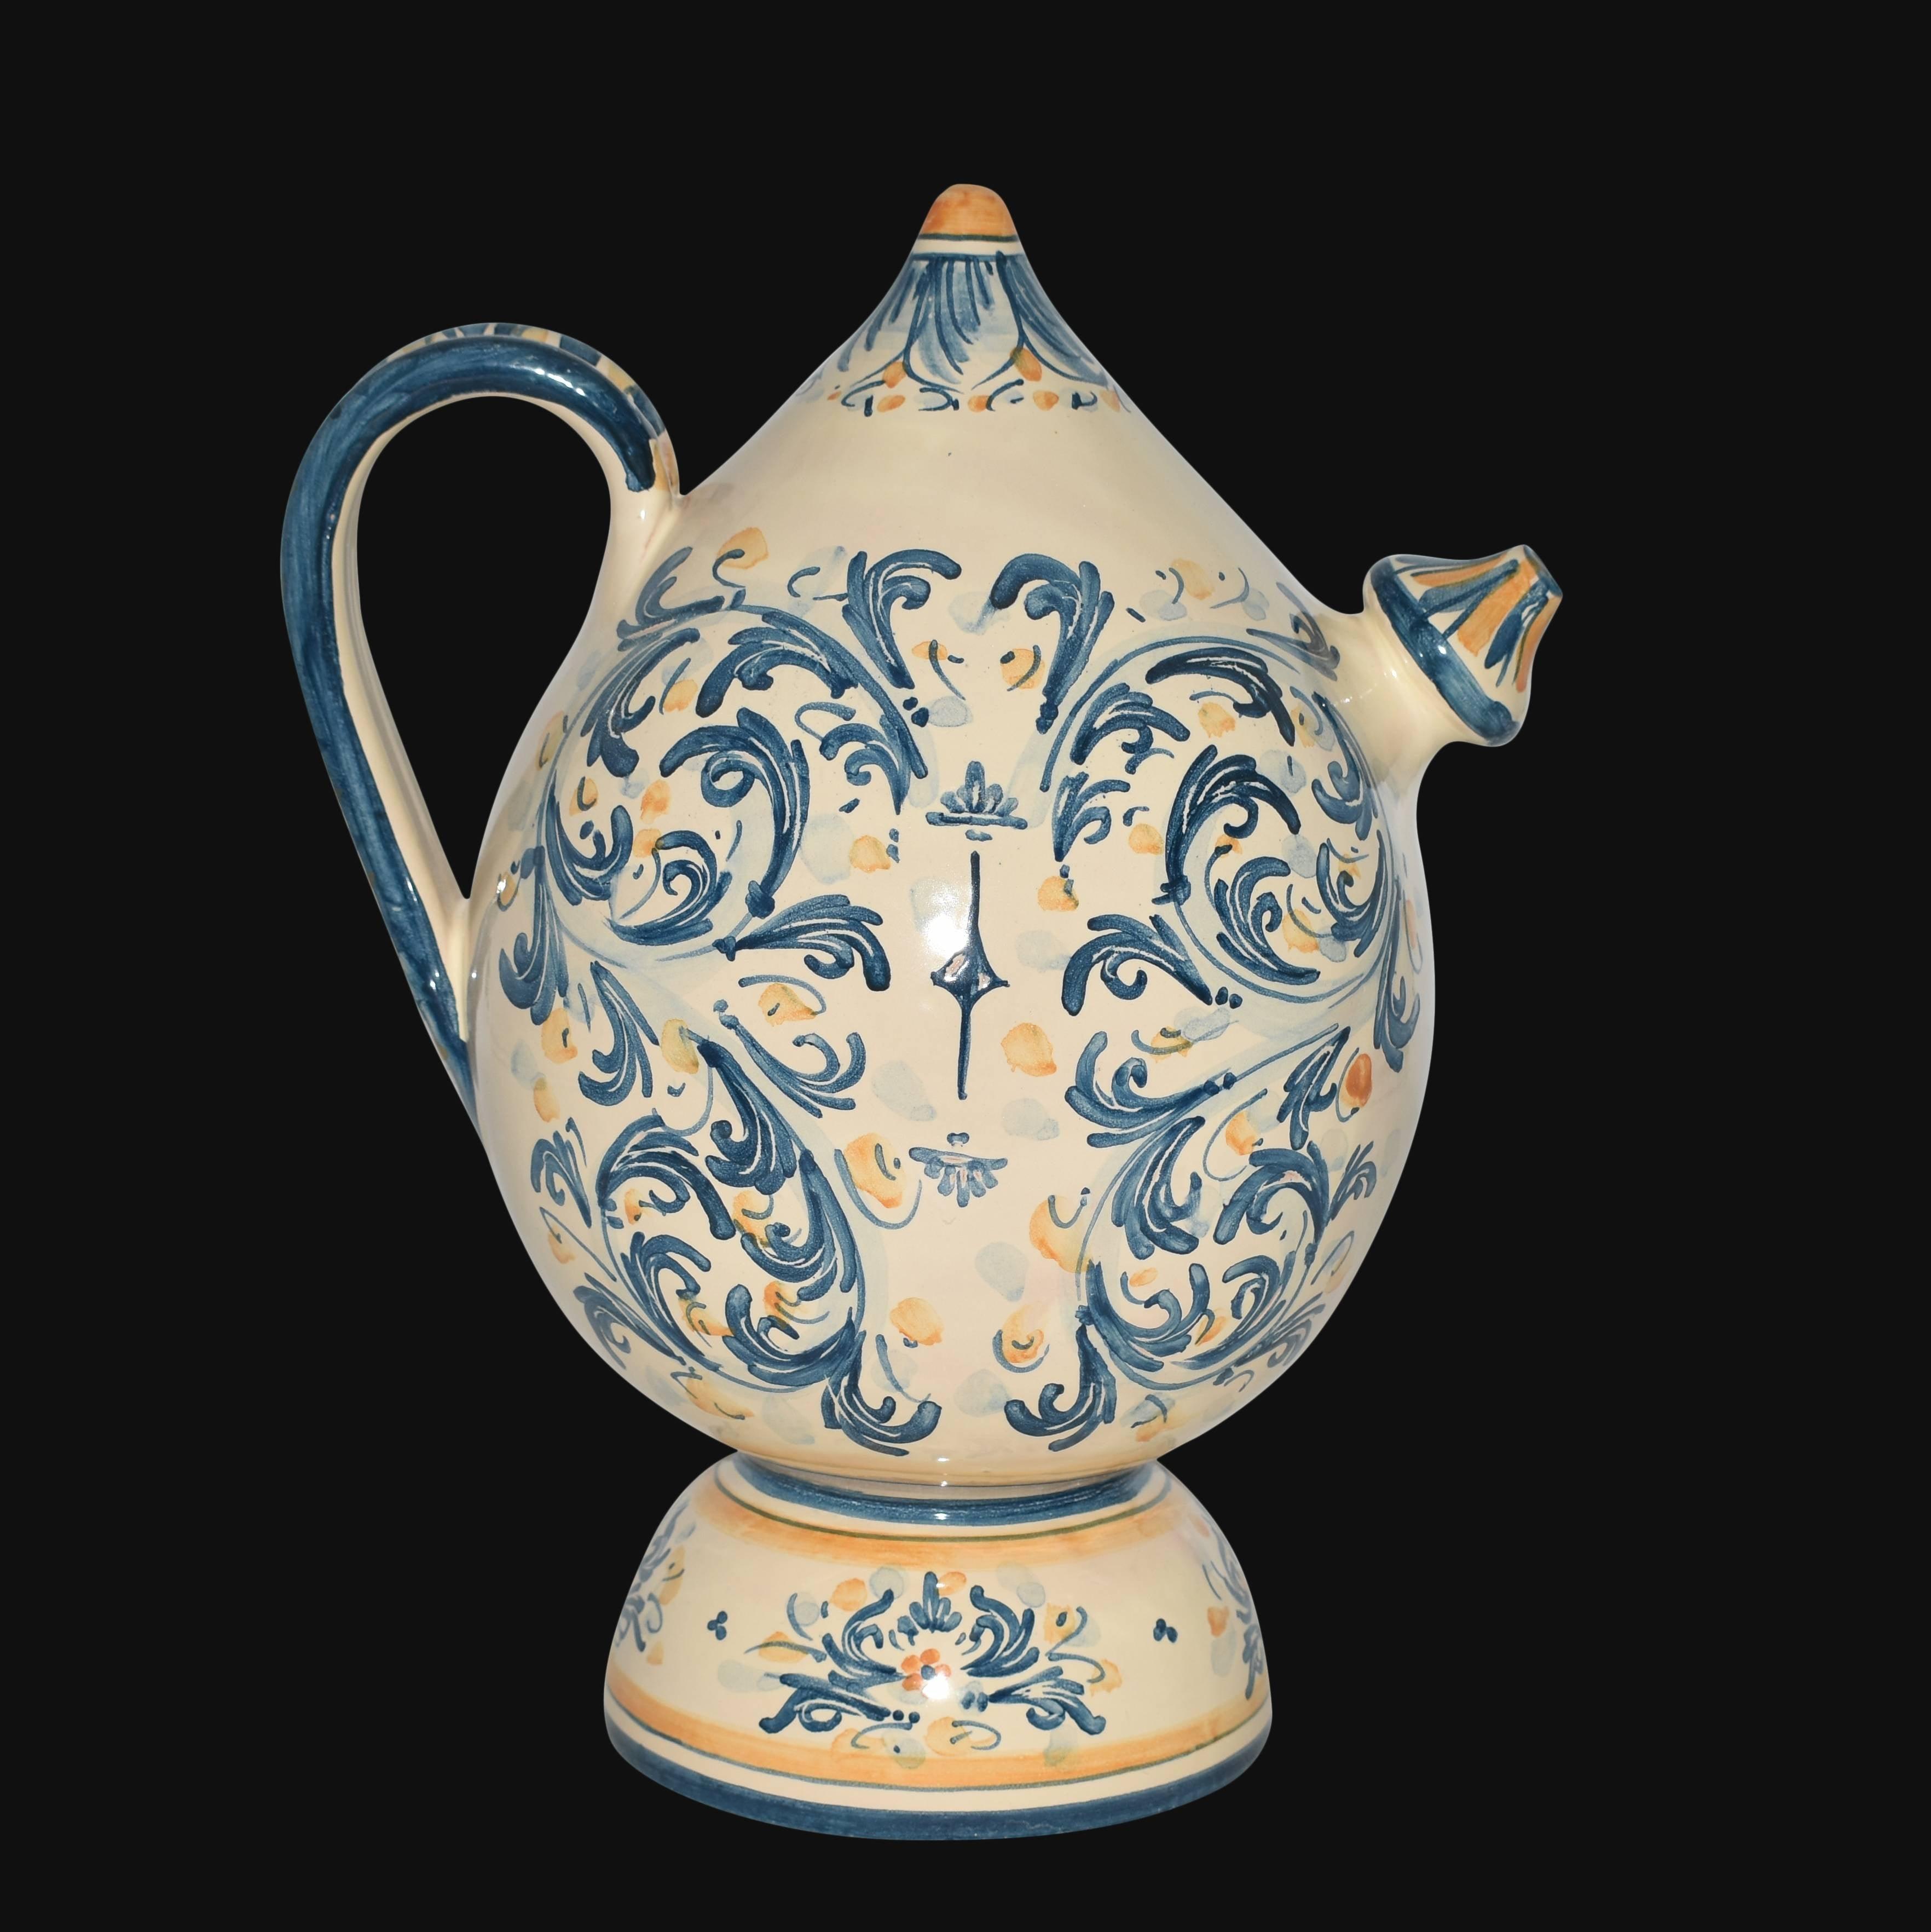 Bummulu Malandrinu h 25 s. d'arte blu e arancio in ceramica di Caltagirone - Ceramiche di Caltagirone Sofia